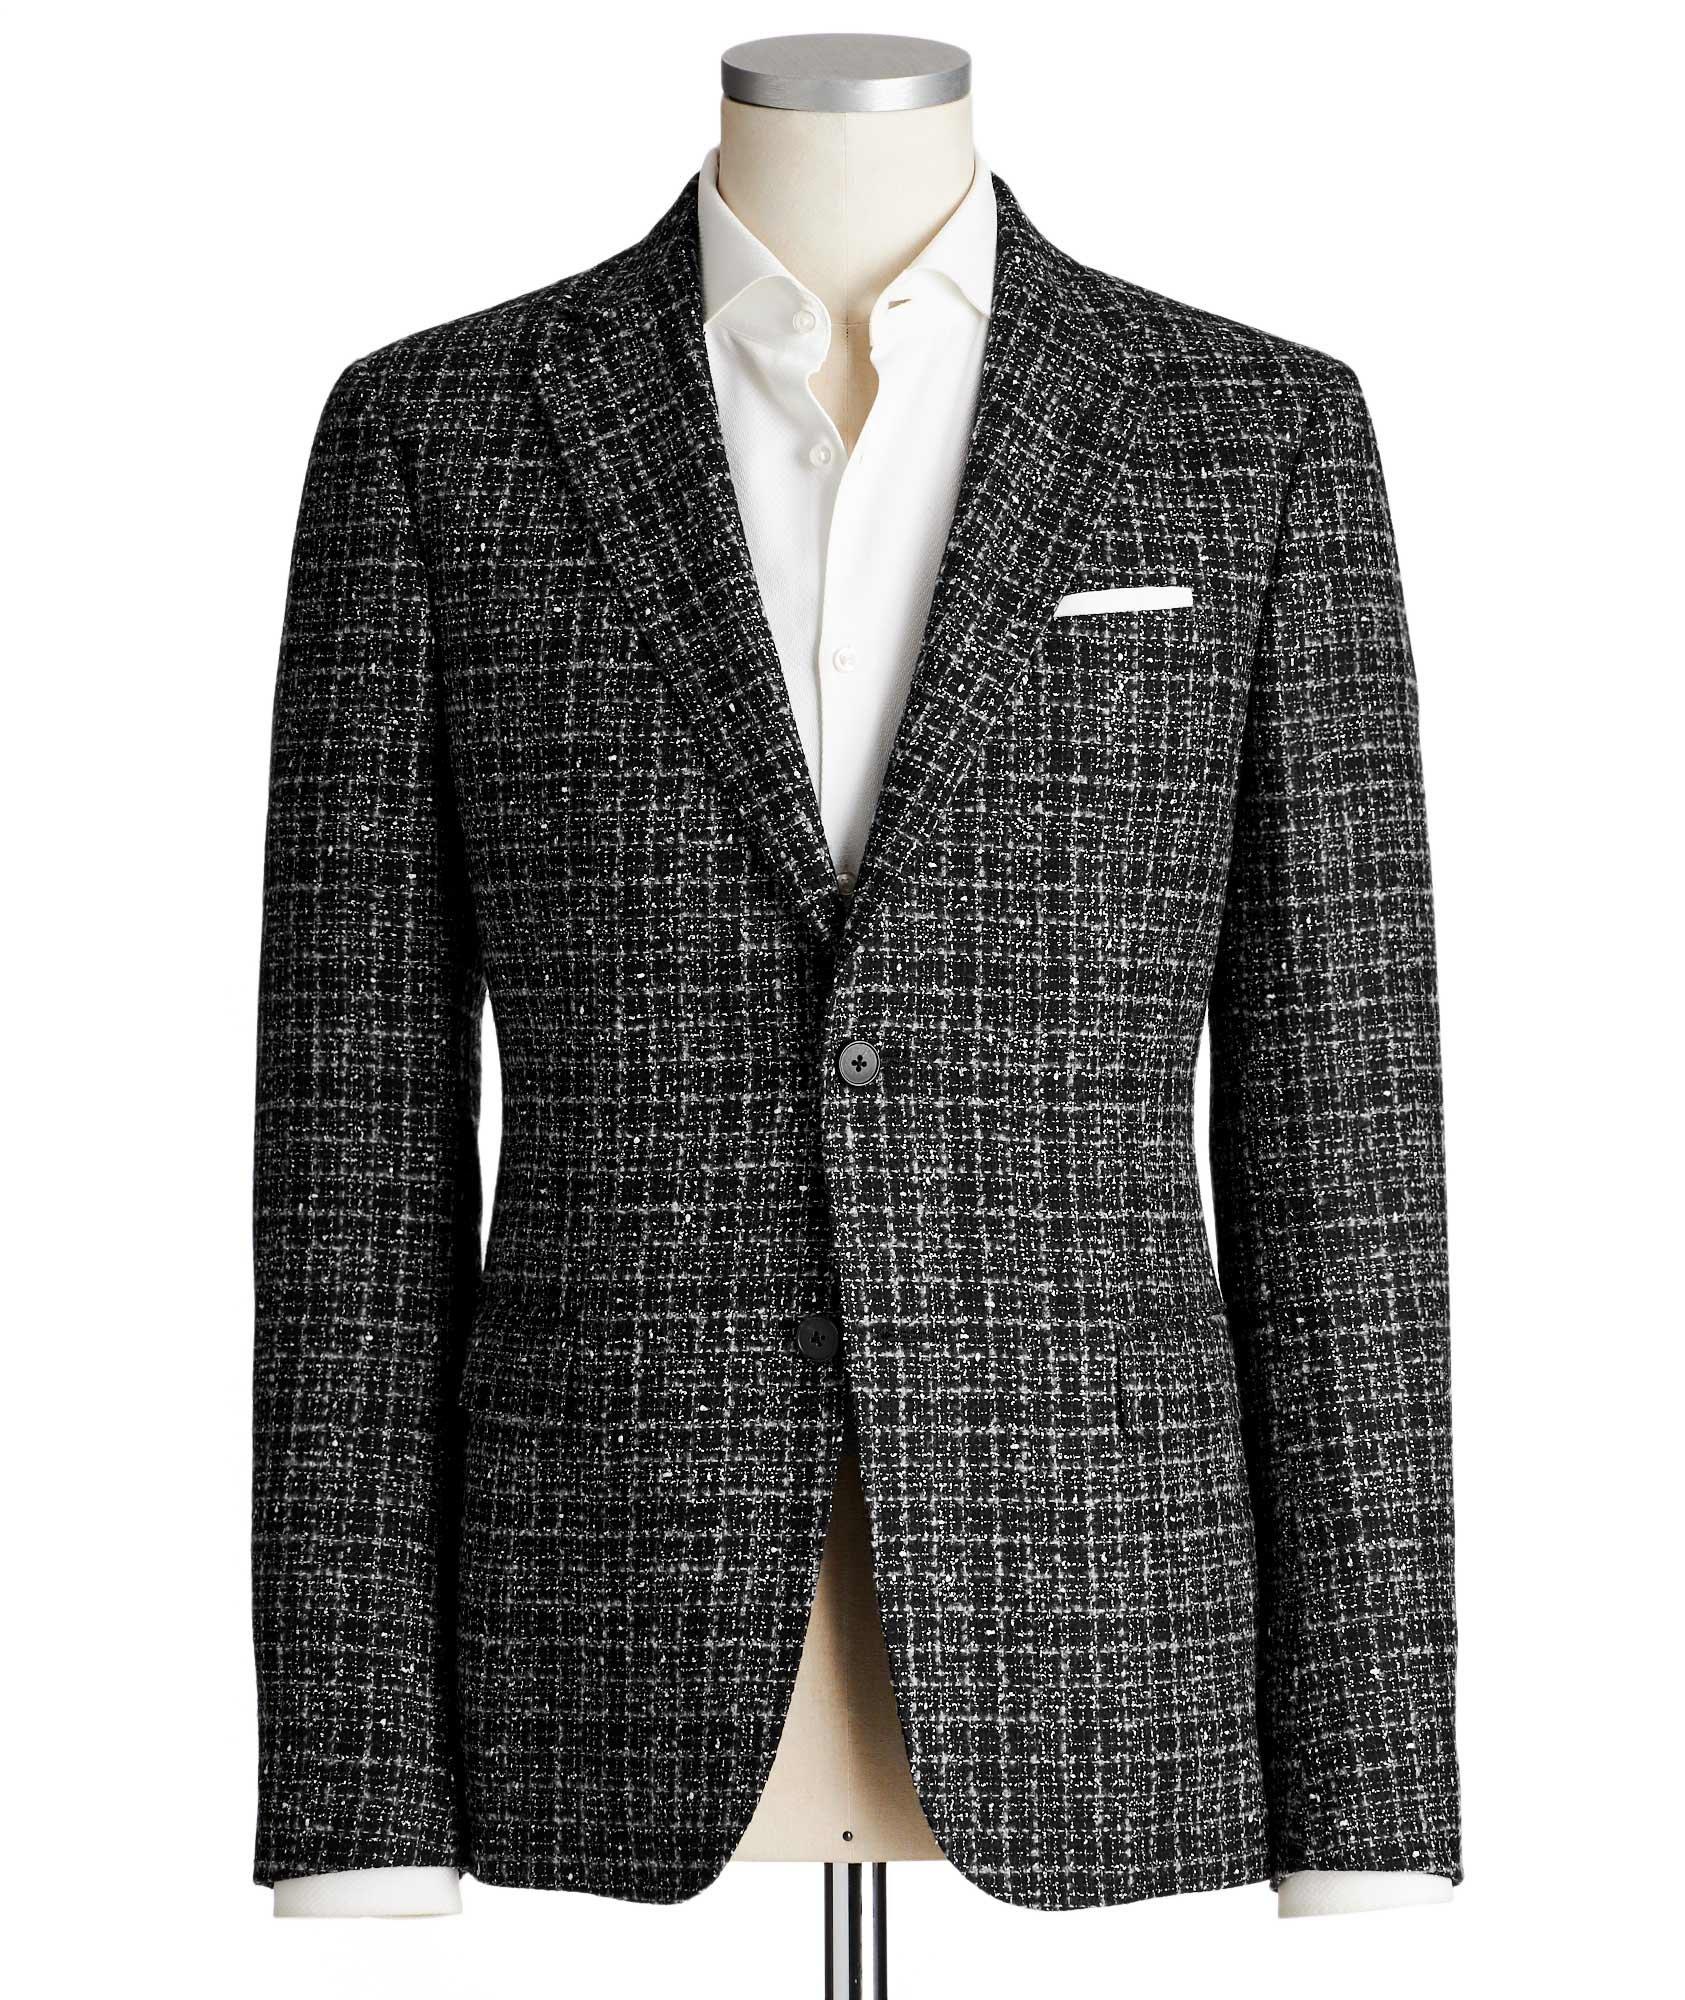 Drop 8 Deco Wool, Cotton & Cashmere Sports Jacket image 0